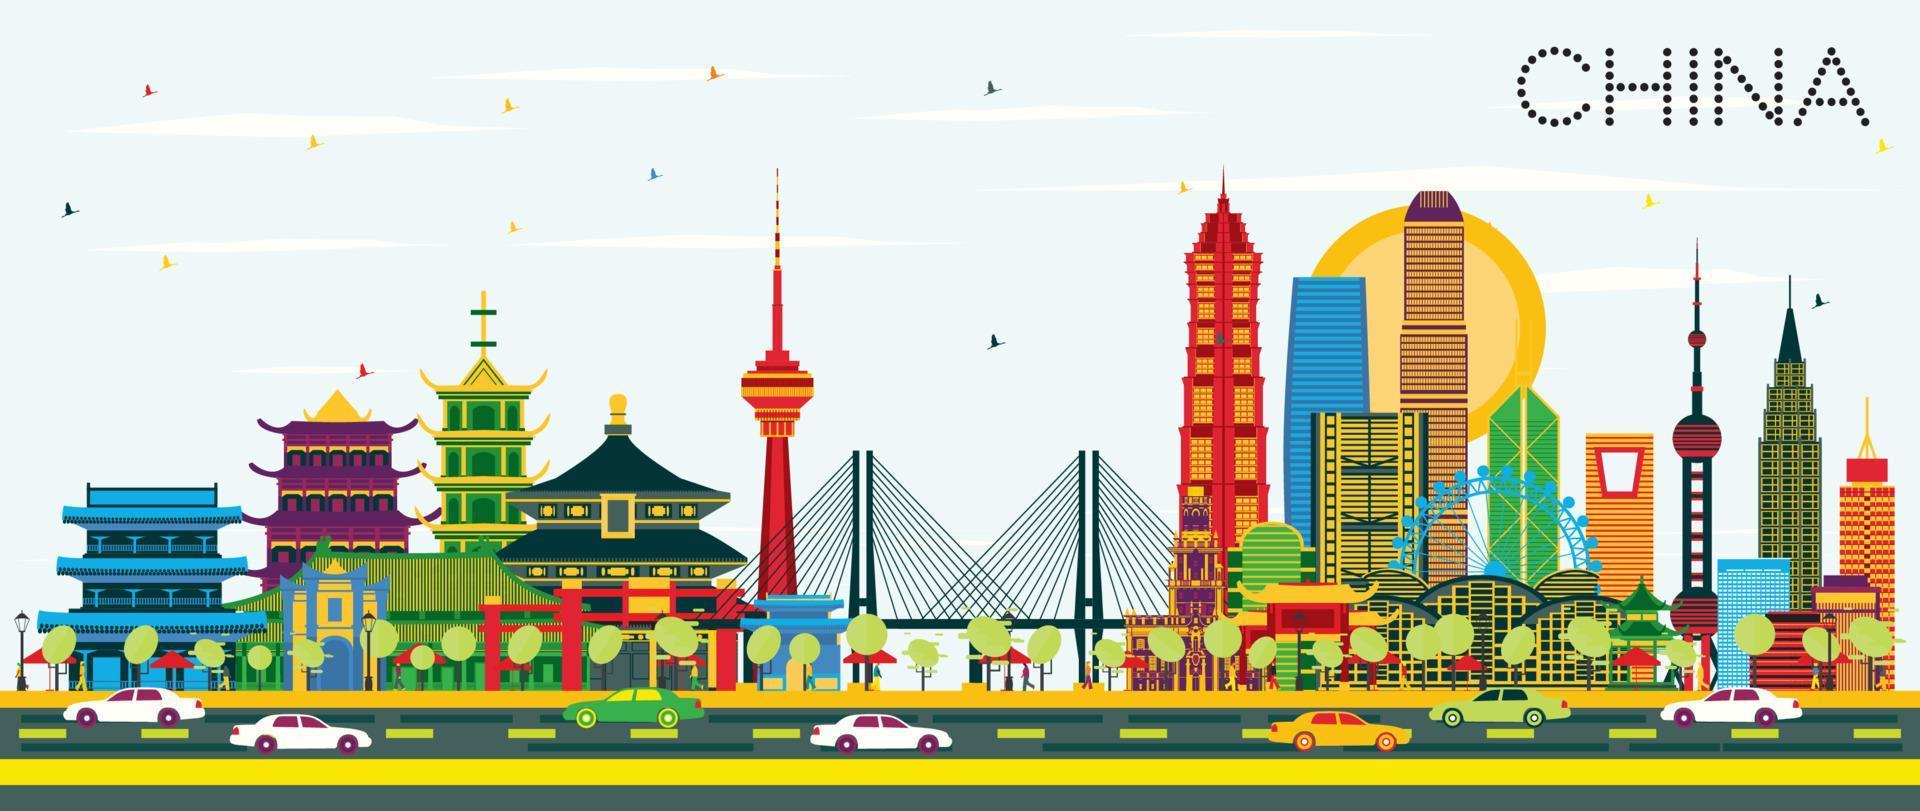 horizonte de la ciudad de china con edificios de color. monumentos famosos en china. vector